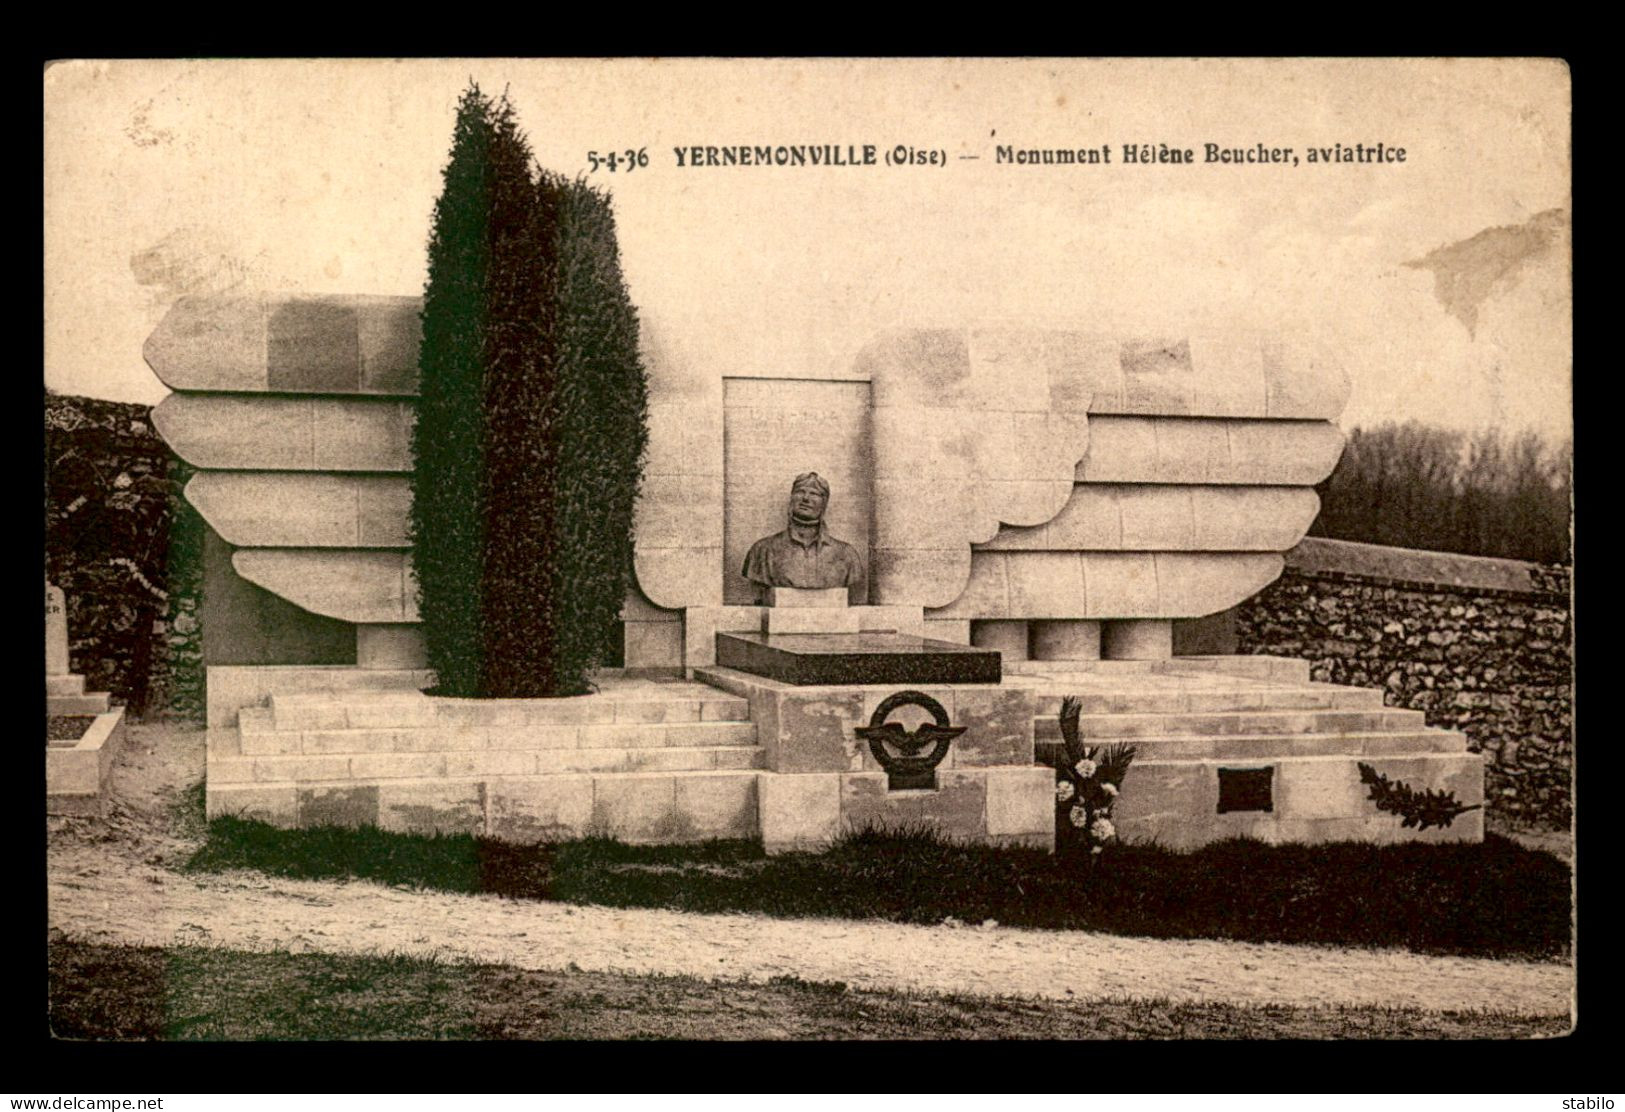 AVIATION - YERNEMONVILLE - MONUMENT D'HELENE BOUCHER - Aviateurs